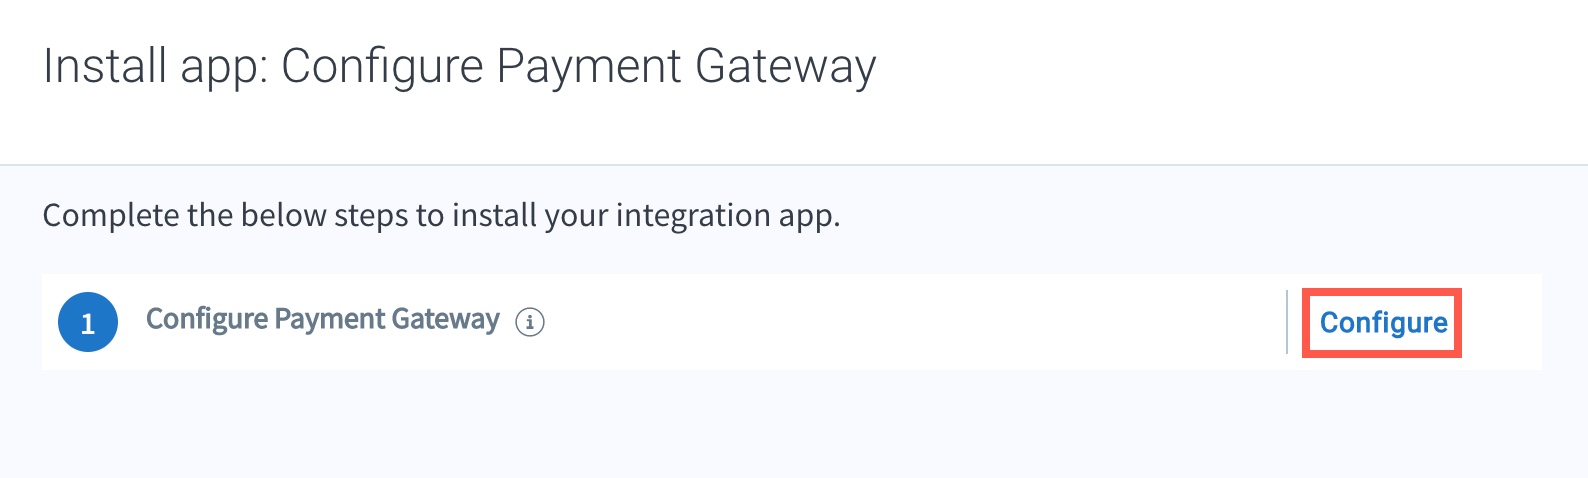 Configure_Payment_Gateway.jpg